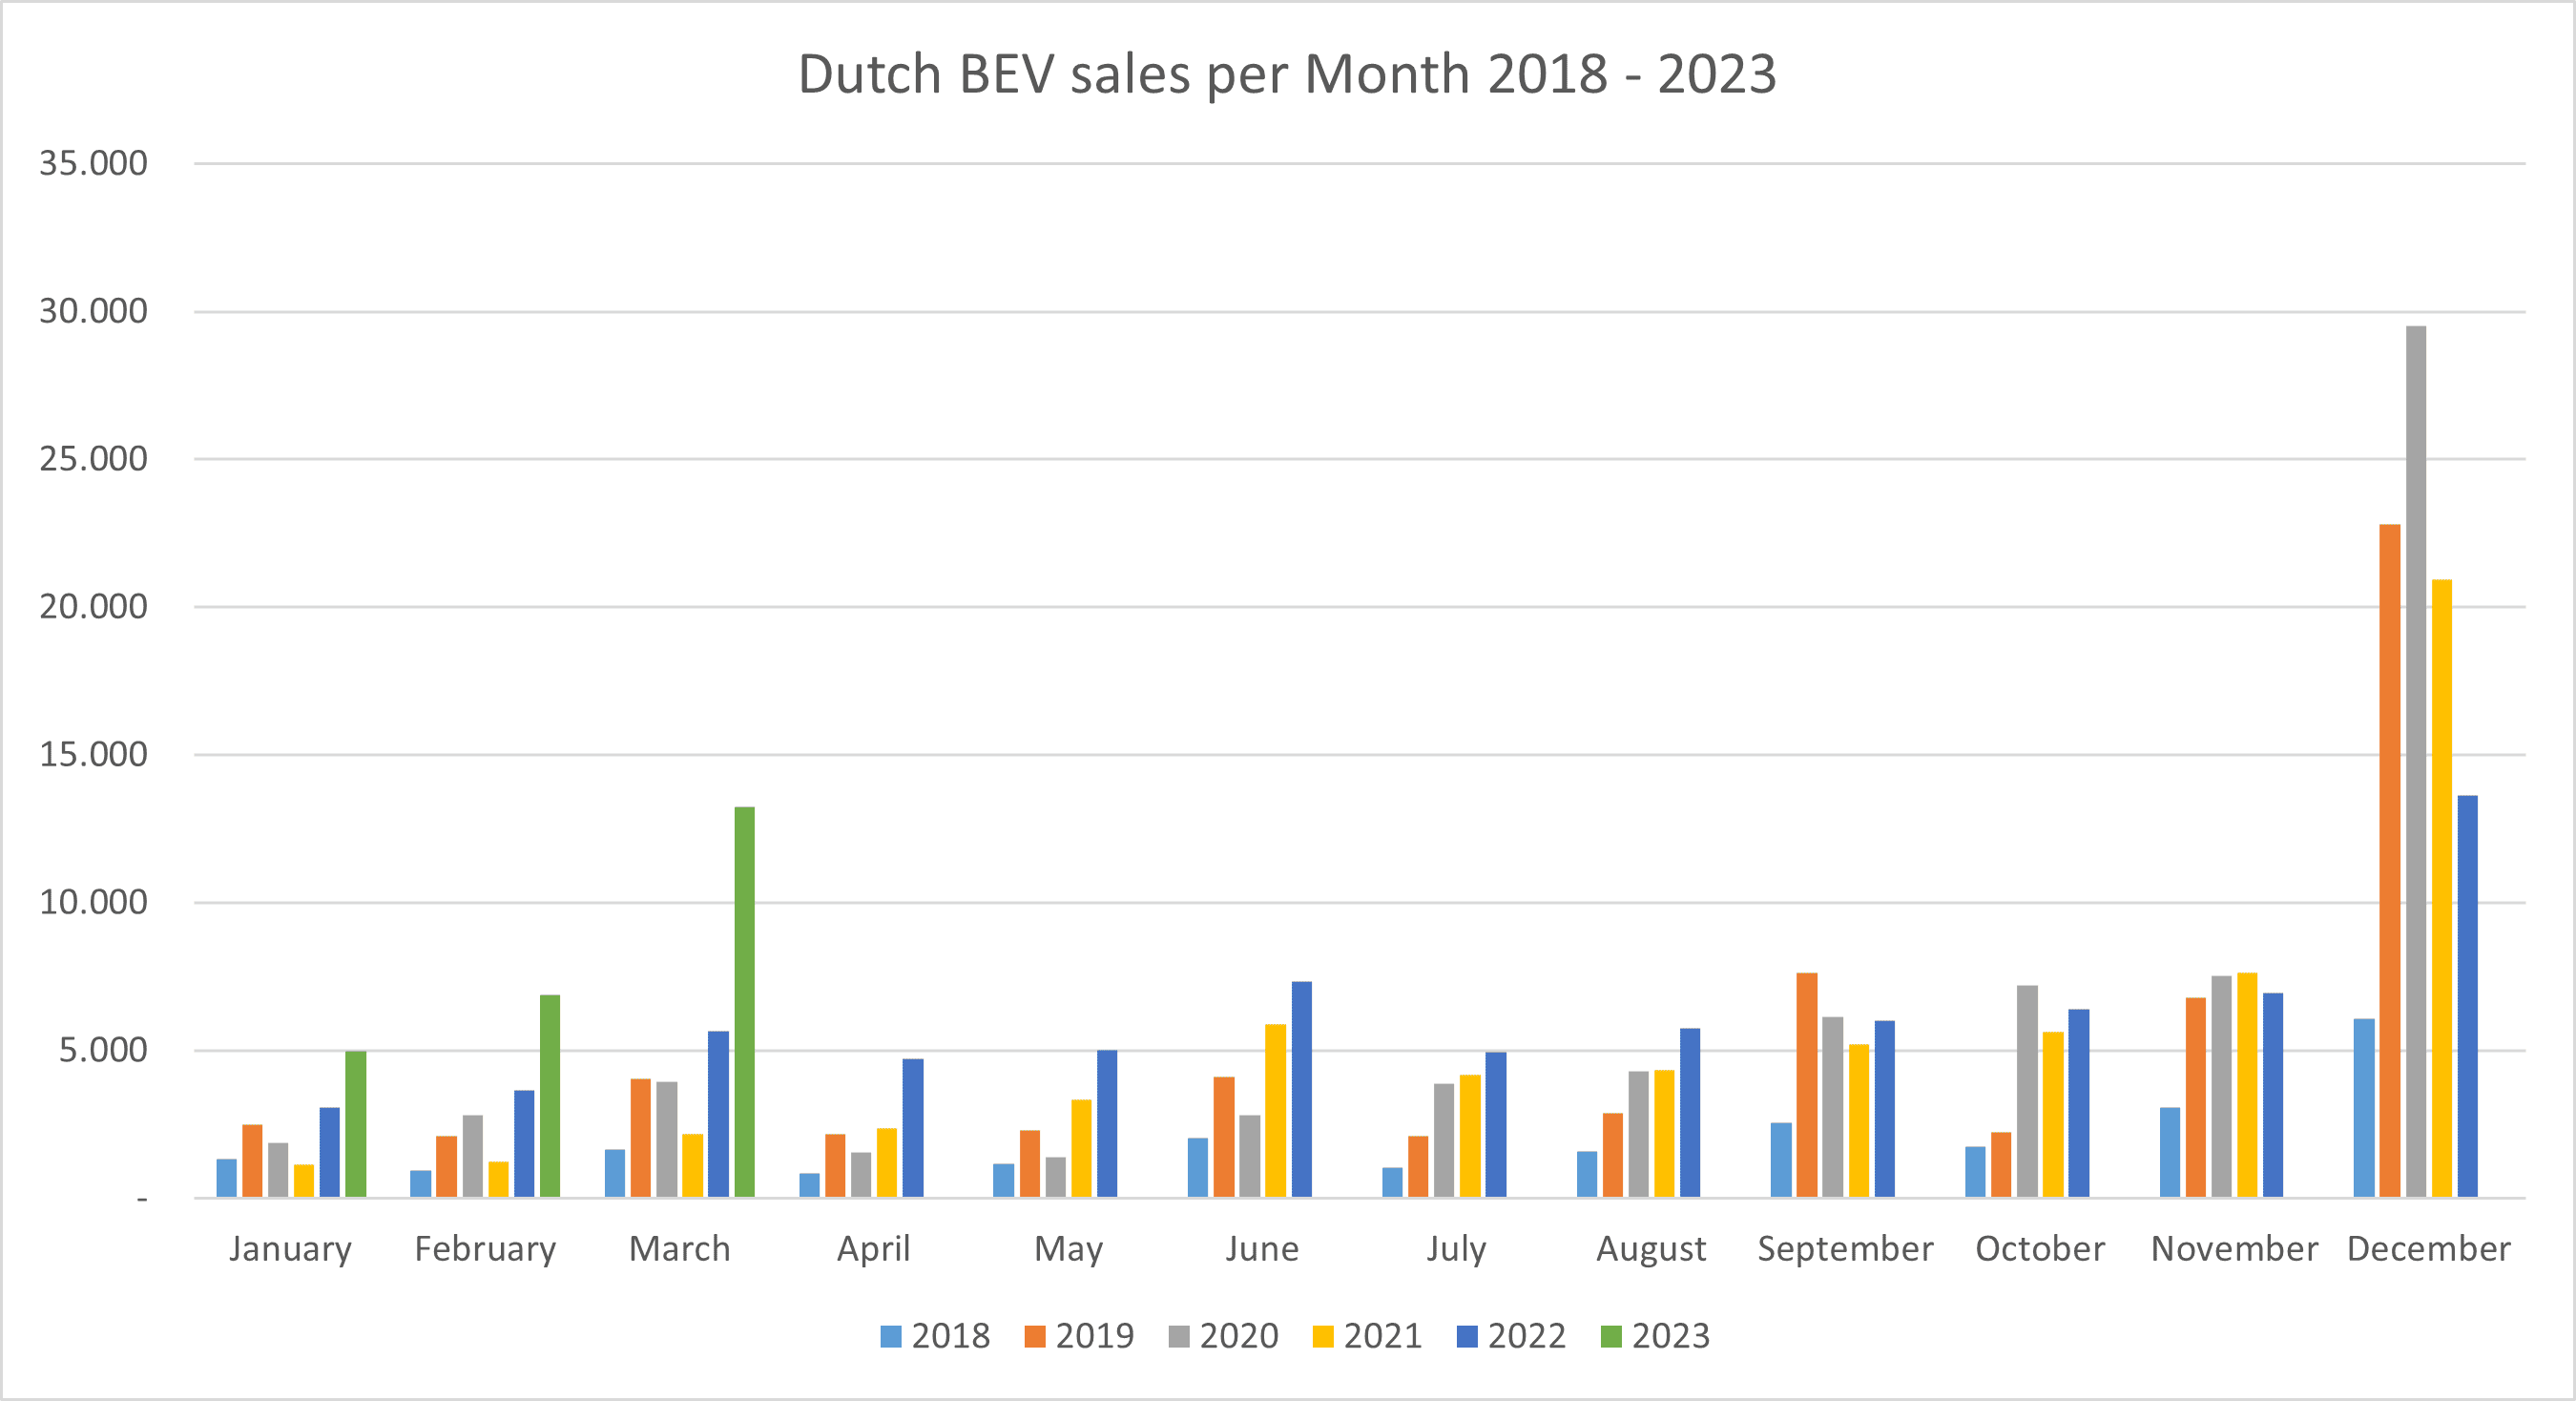 Dutch BEV sales per month 2018-202303